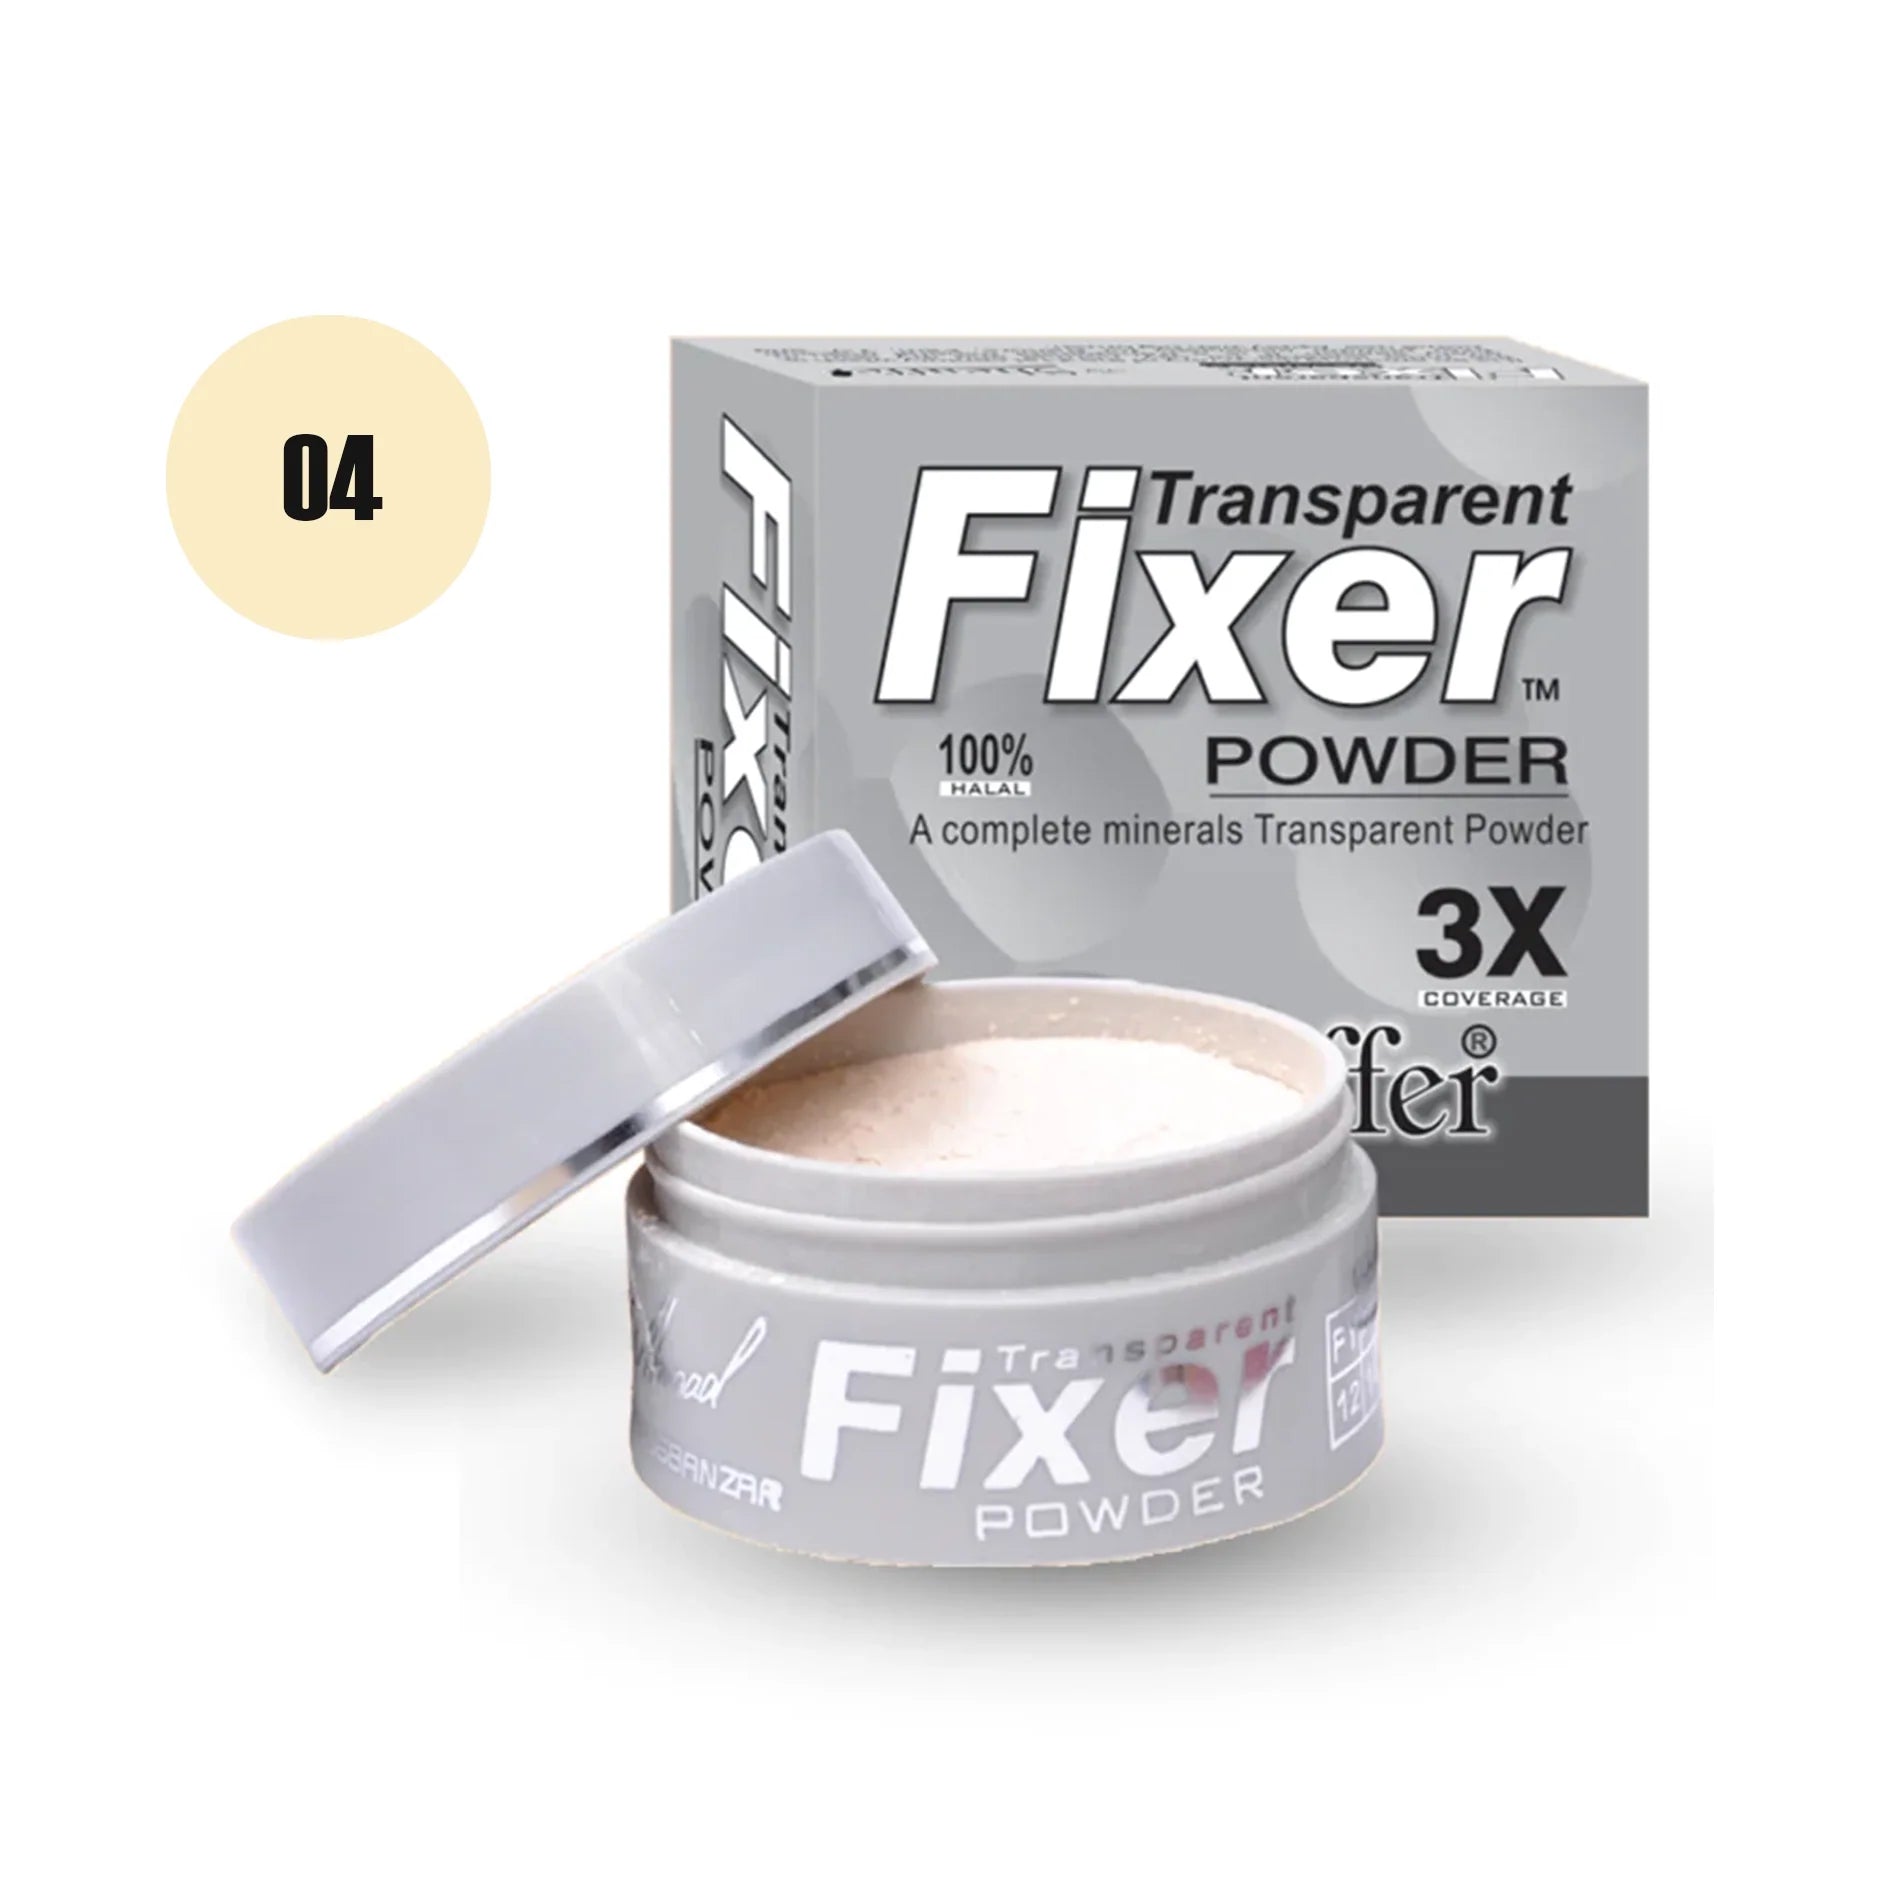 Sheaffer Transparent Fixer Powder Shade No 02 - Retailershop - Online Shopping Center